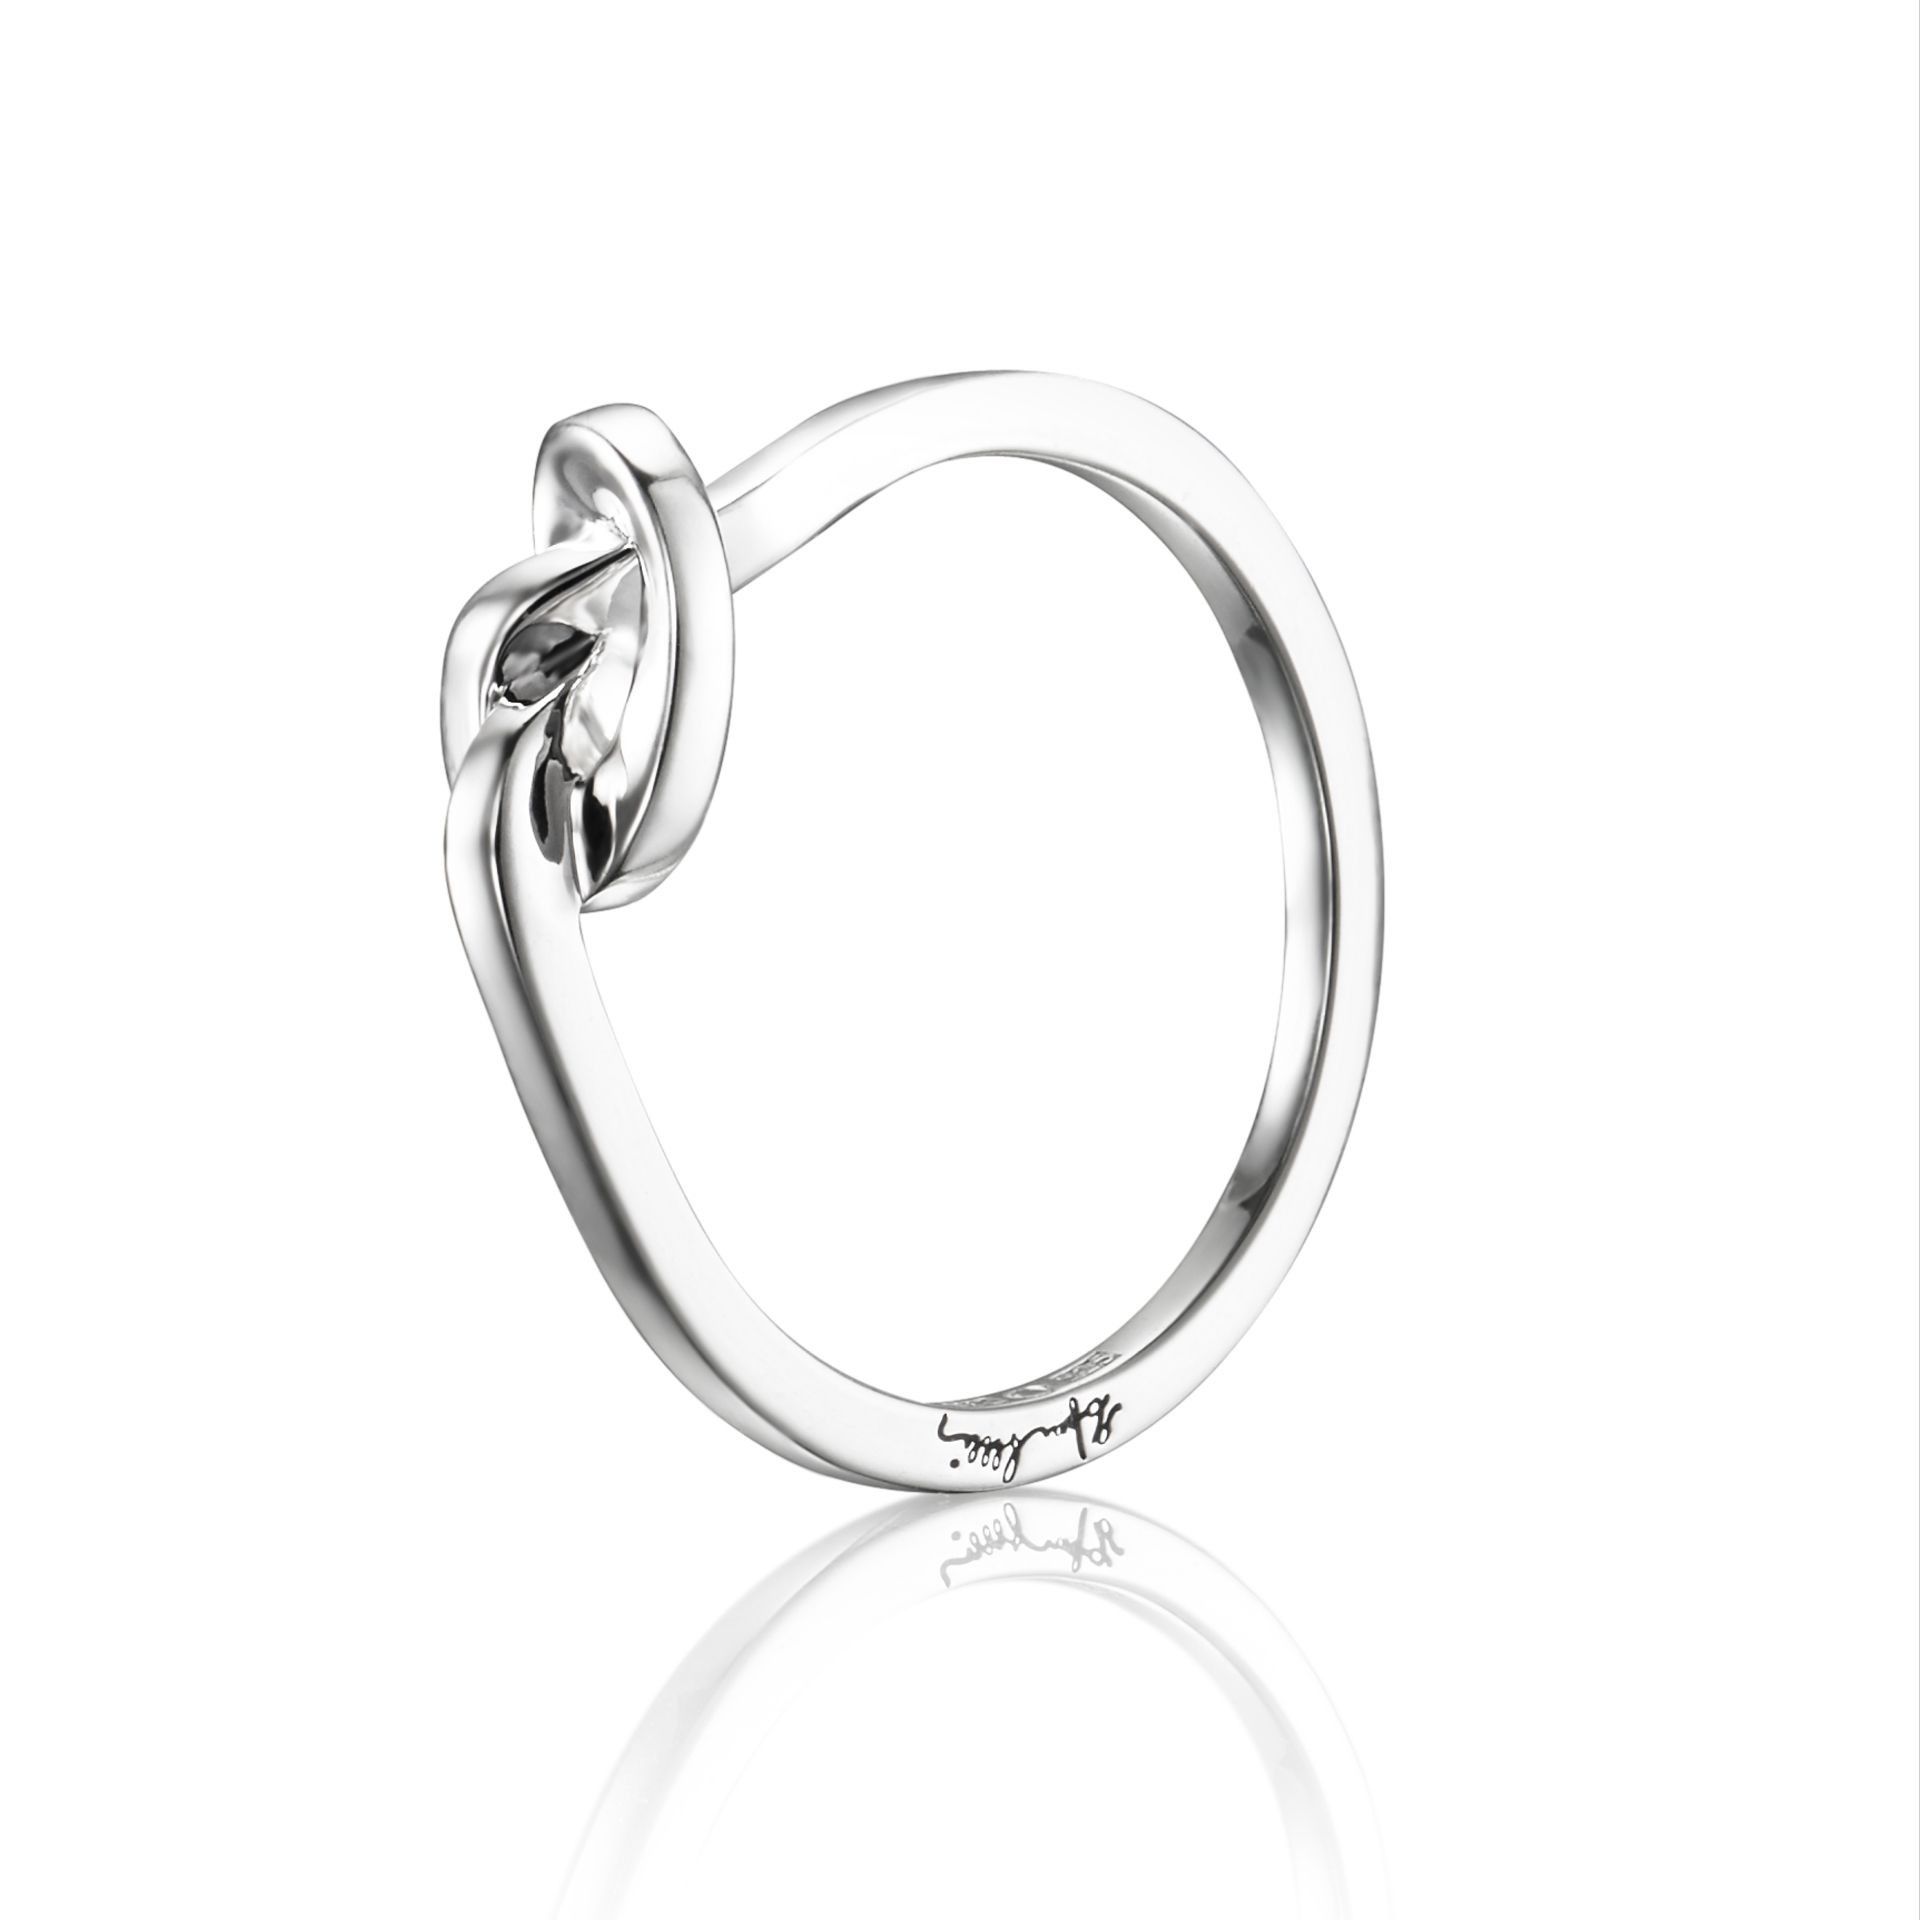 Efva Attling Love Knot Ring 17.50 MM - SILVER